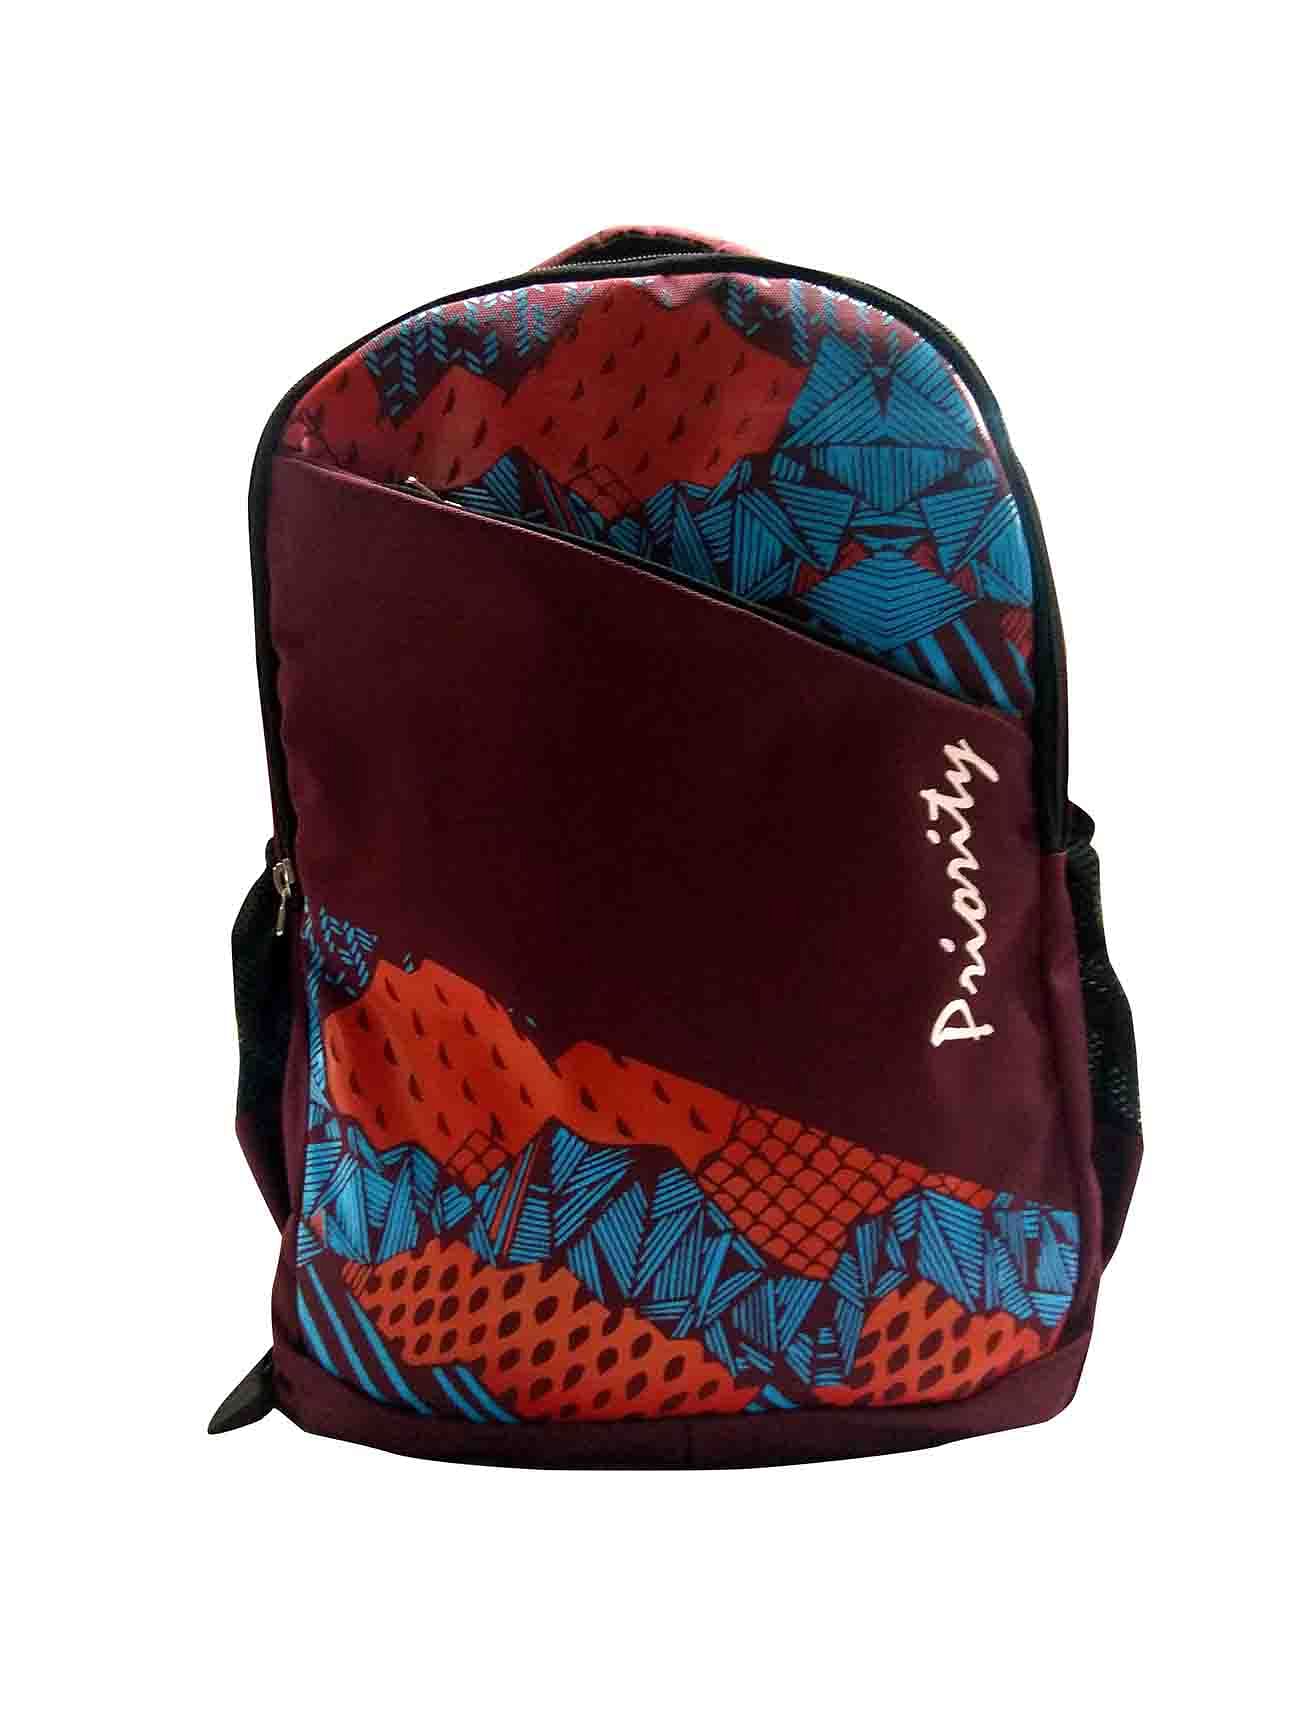 HS HIPPIE 01 -MAROON/BLUE Backpack Bag